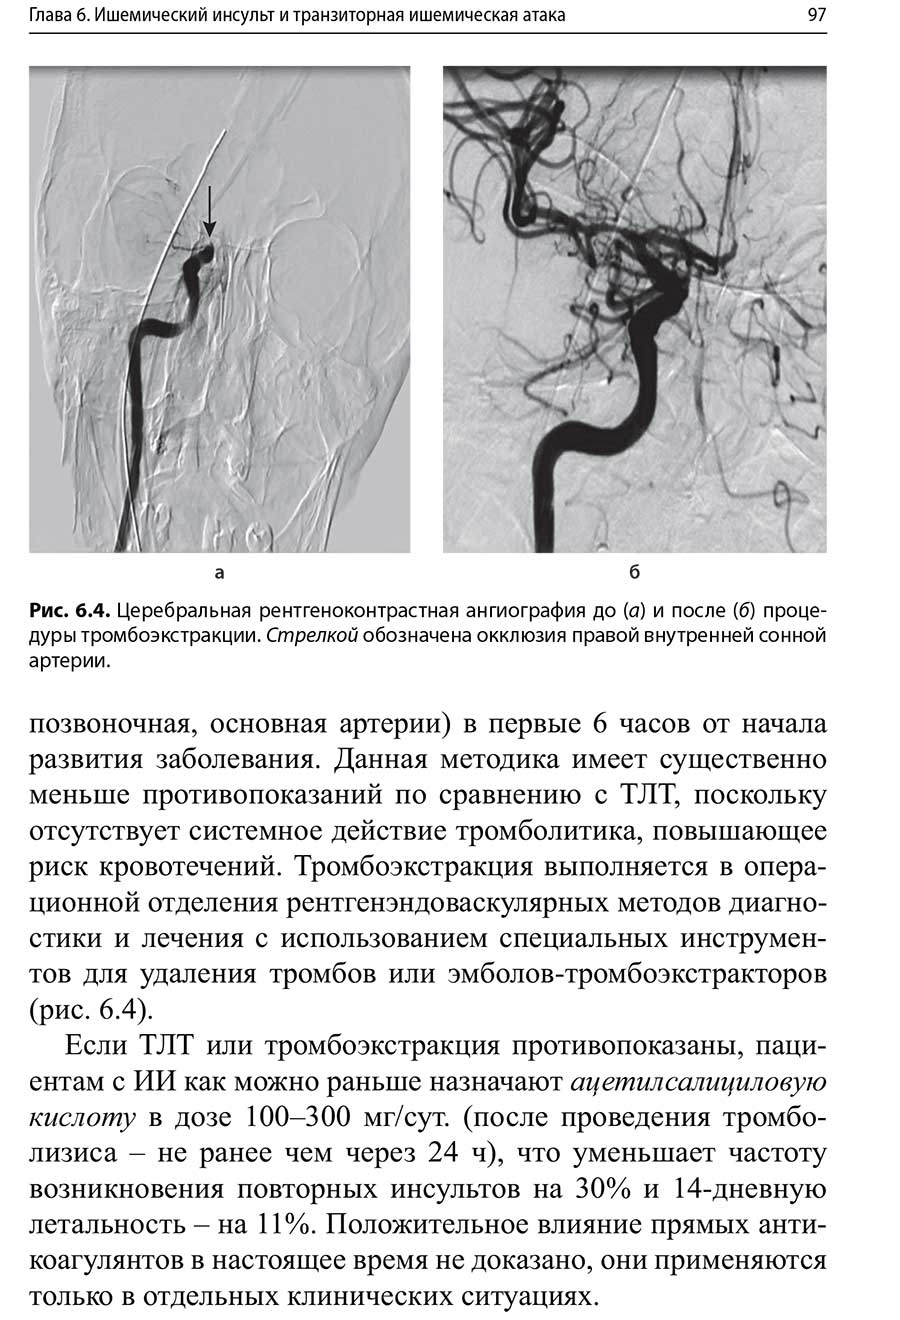 Церебральная рентгеноконтрастная ангиография